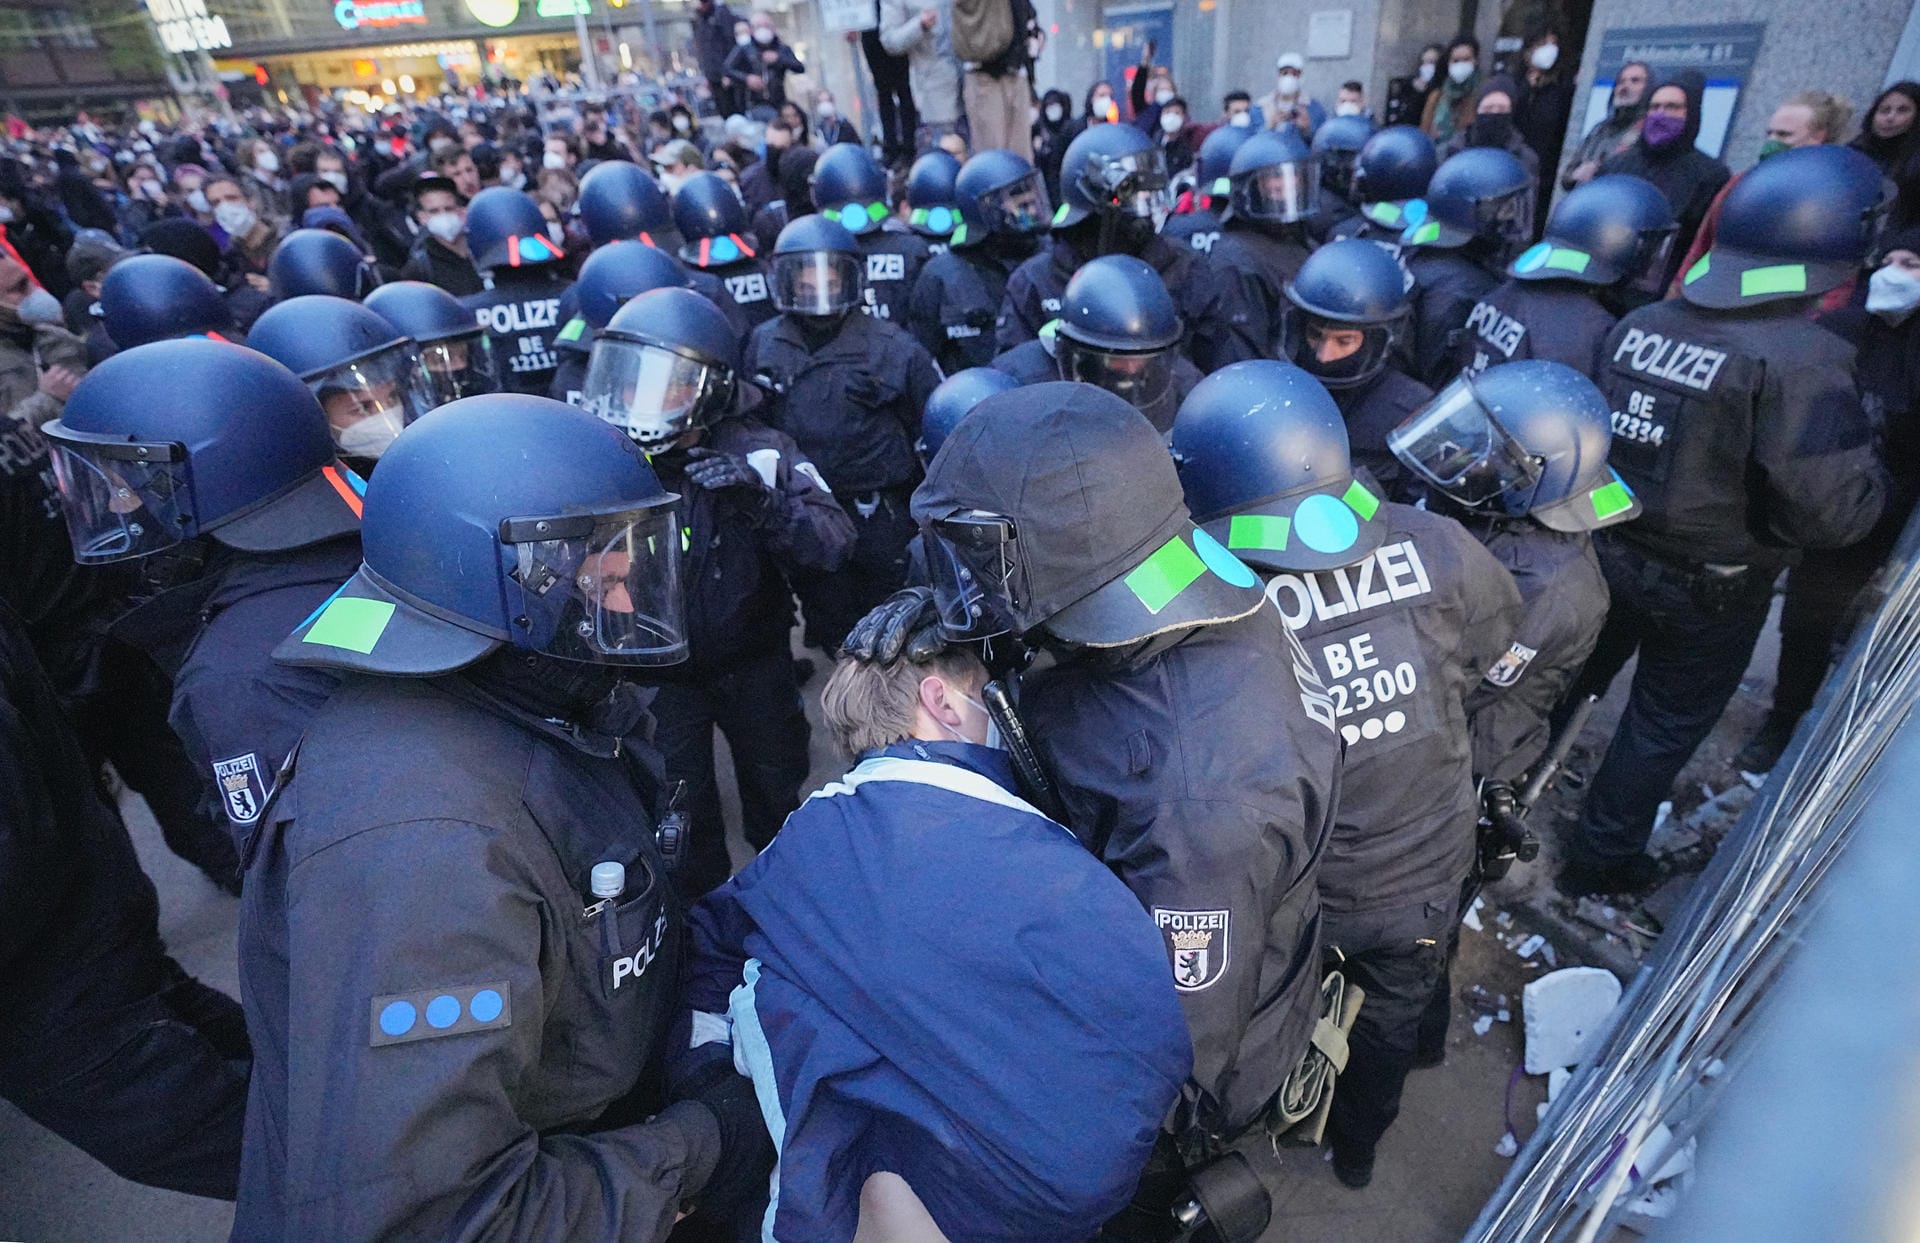 Polizisten bei der Demo: In der Hauptstadt waren am 1. Mai laut Polizei den ganzen Tag über 5.600 Beamten im Einsatz.